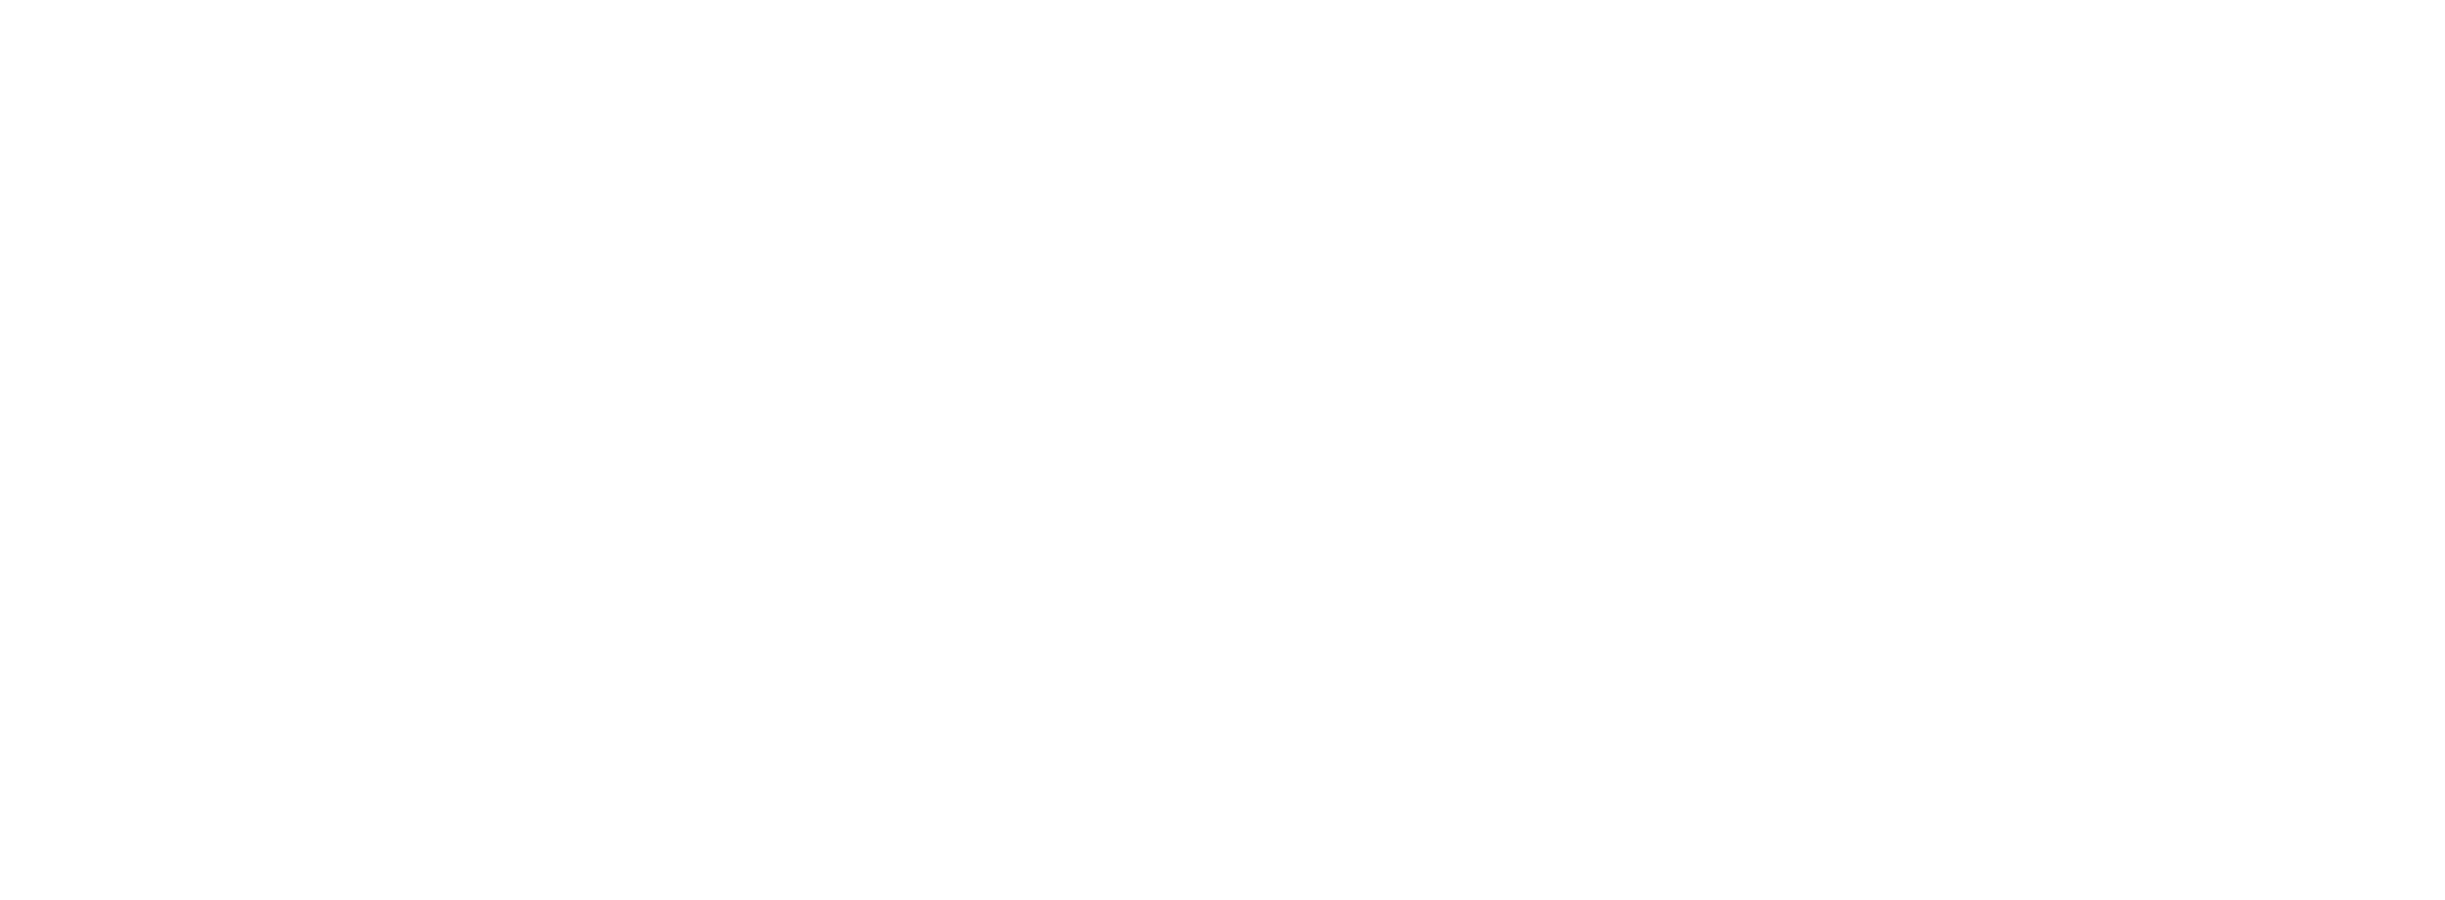 JACK&JONES_Junior_logo_1_line_white